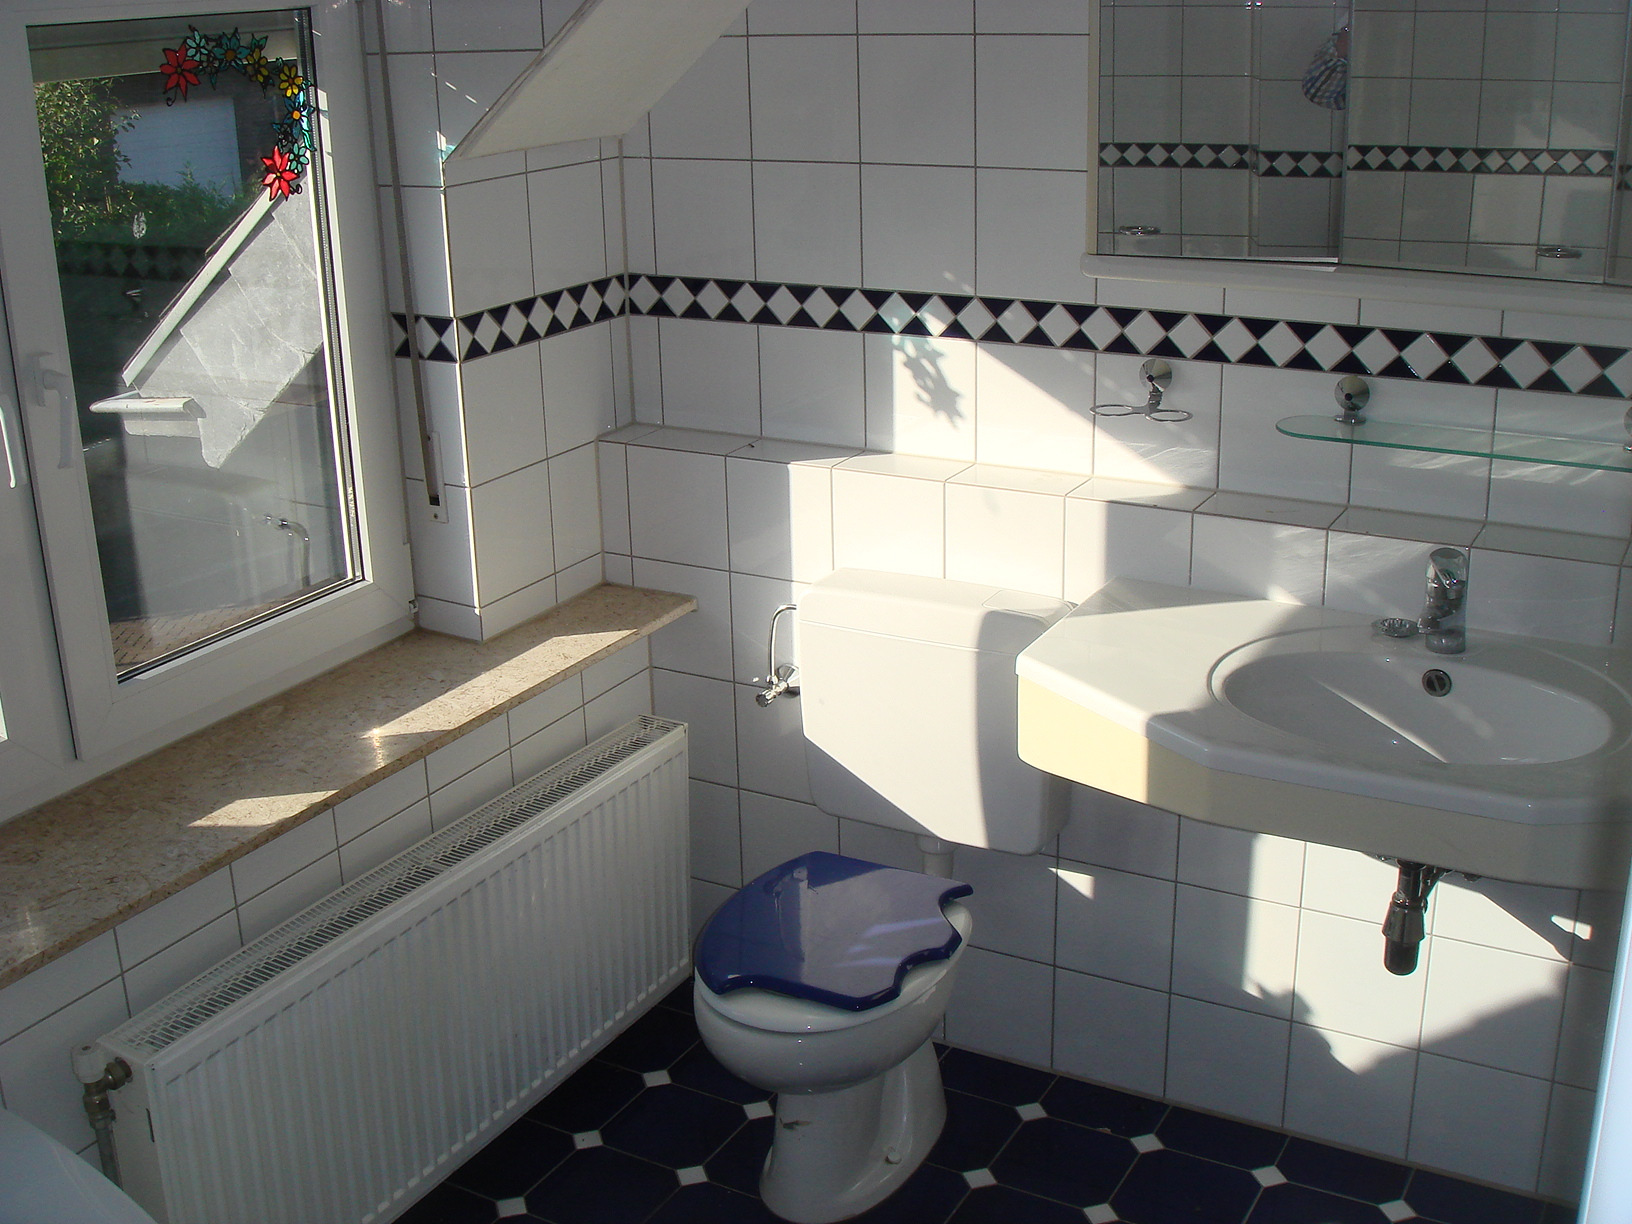 Tevens bevindt zich op de eerste verdieping de geheel betegelde badkamer met hoekbad, douche, toilet en wastafel.